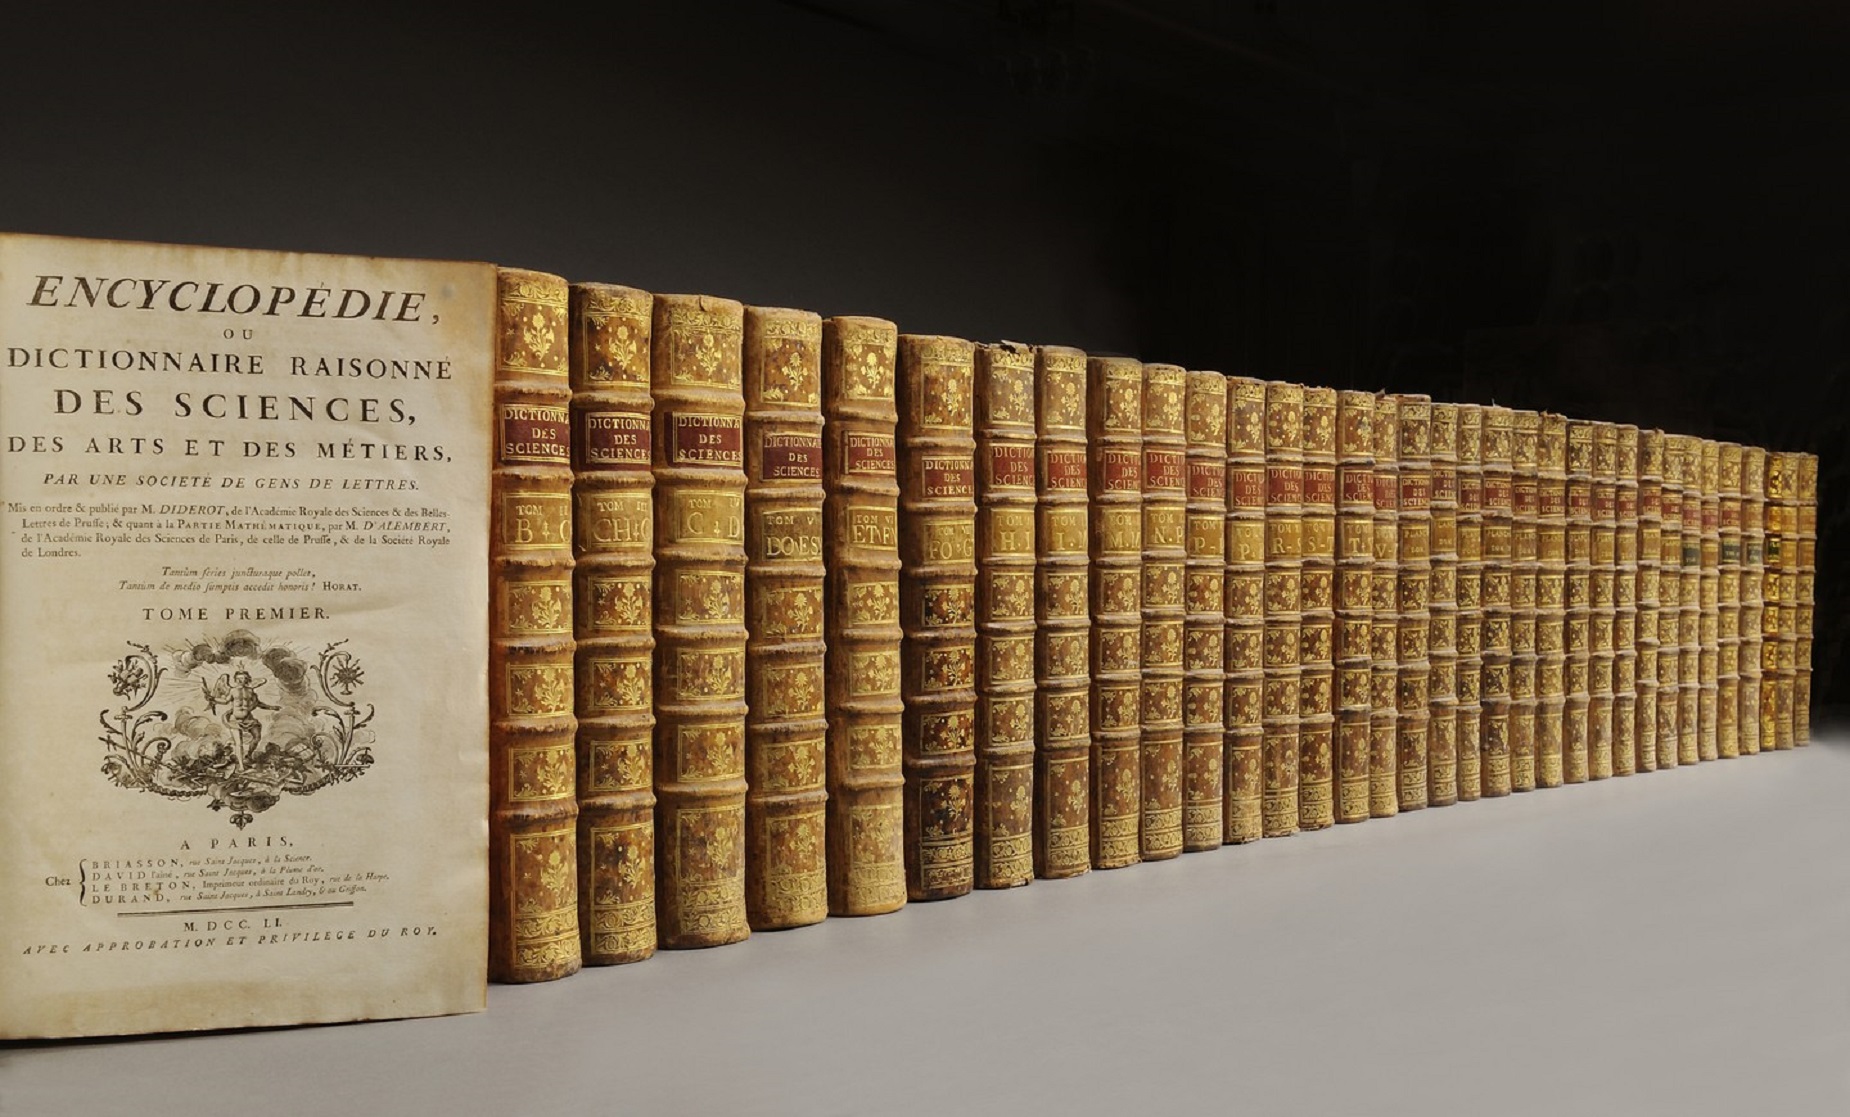 L'Encyclopédie de Diderot et d'Alembert, 35 volumes, édités entre 1751 et 1780. © Bibliorare.com, 1999-2017 Bibliorare-Association